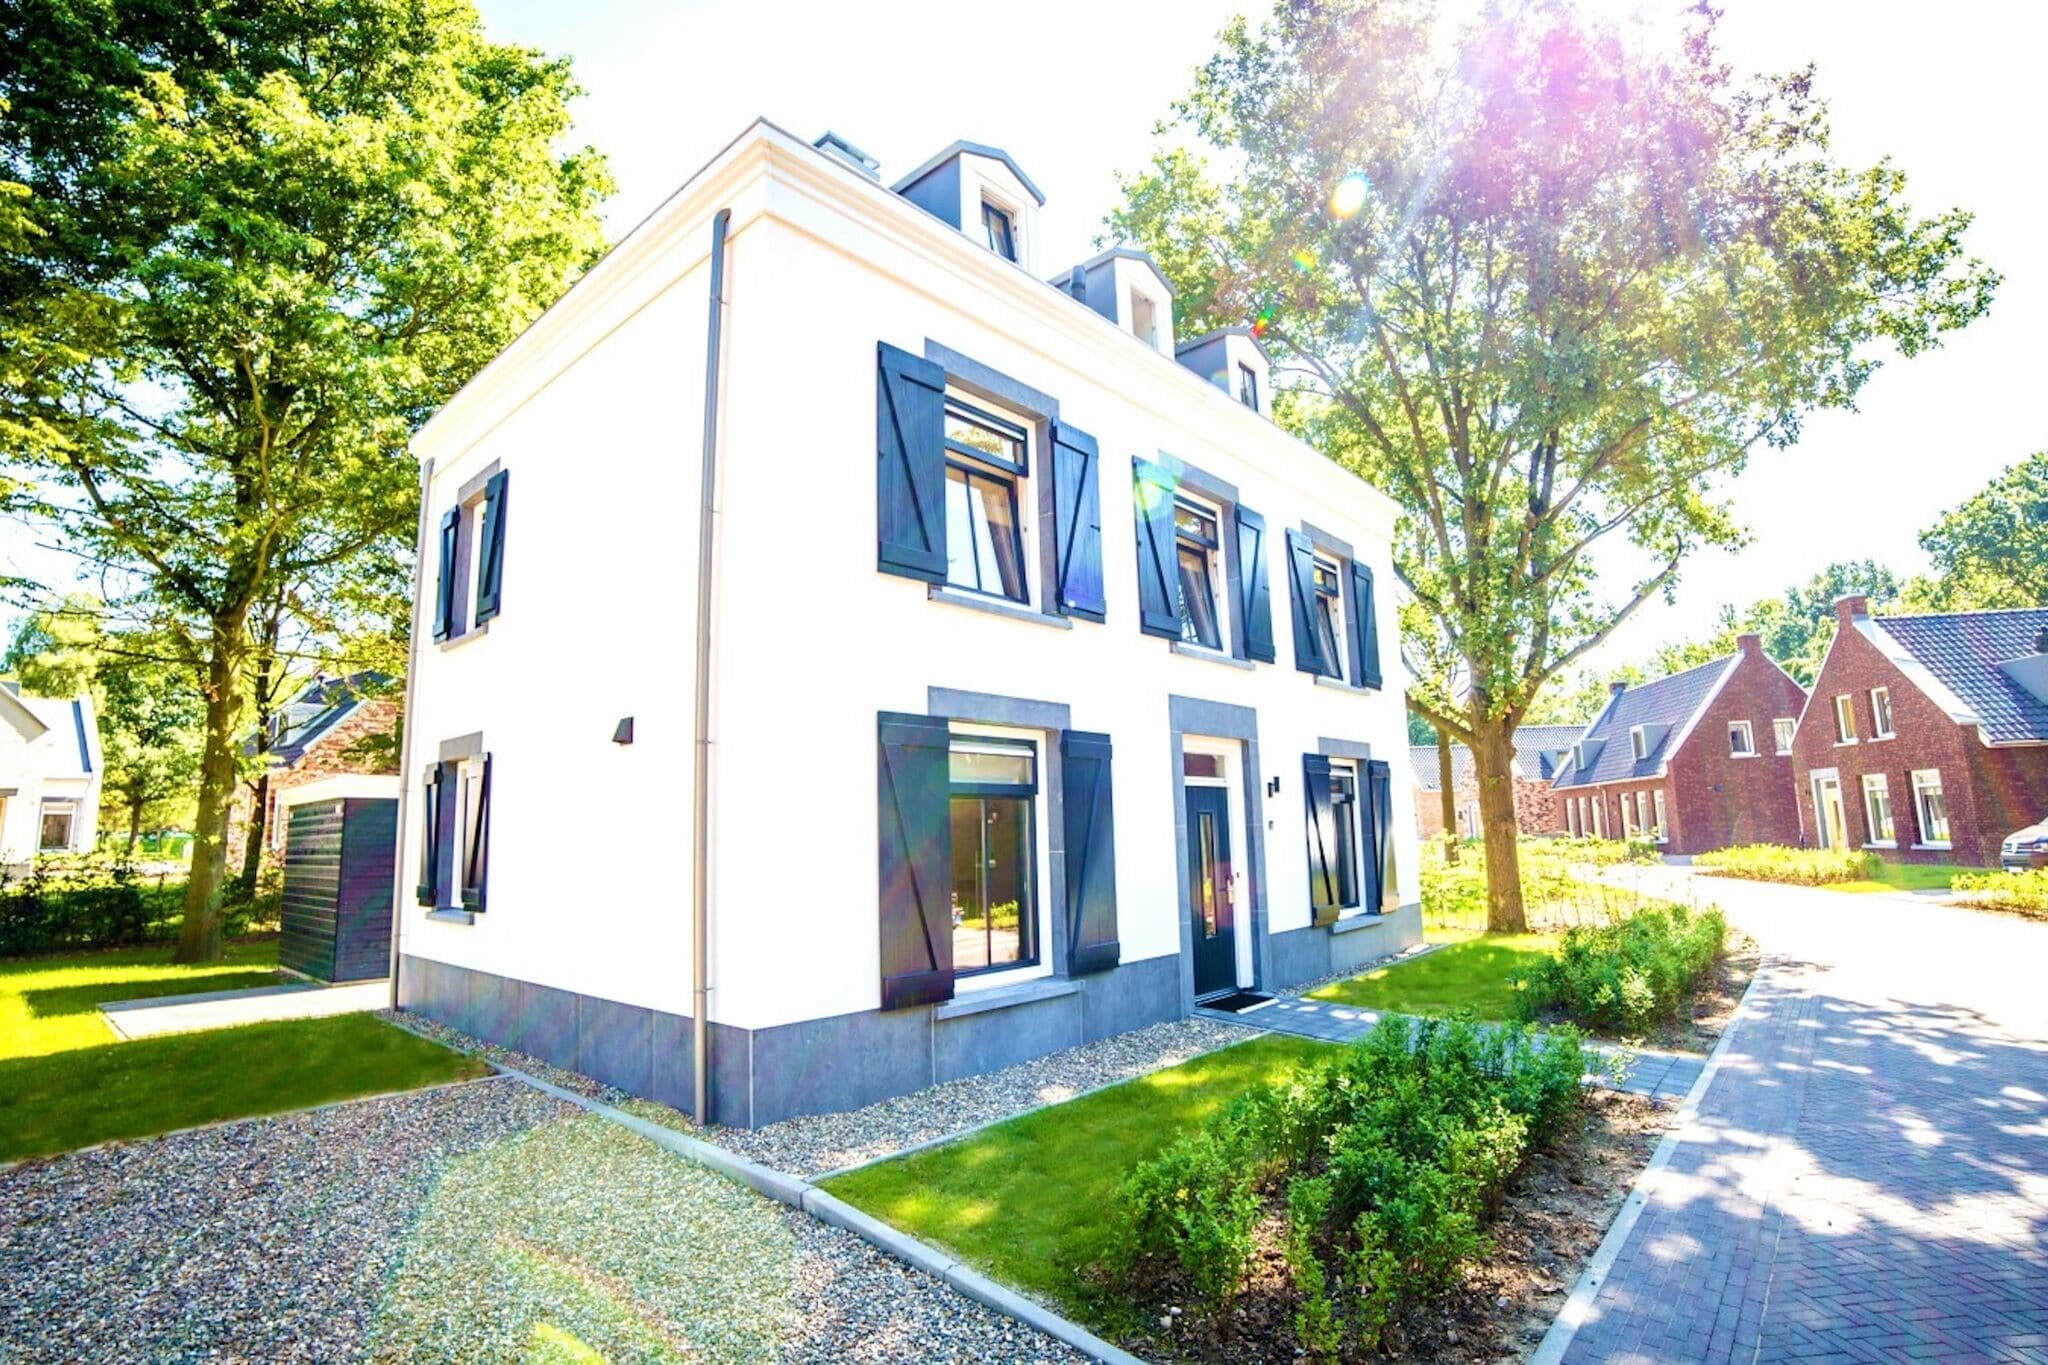 Maison de vacances luxuriante à 4 km de Maastricht